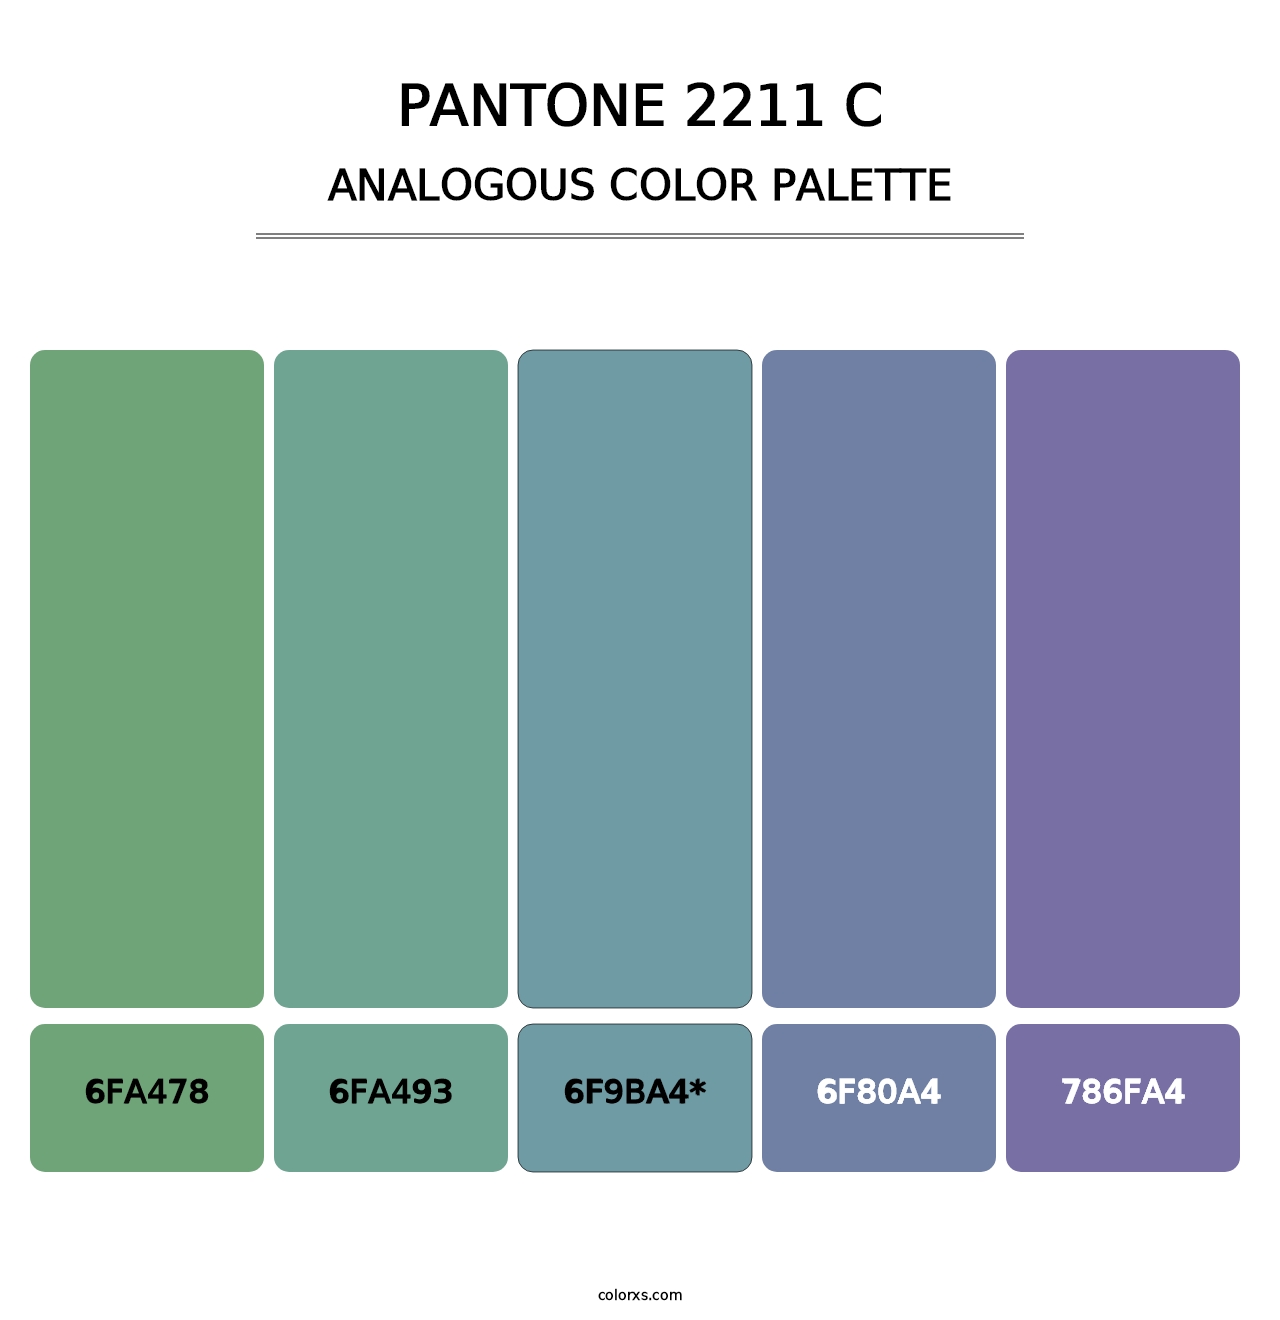 PANTONE 2211 C - Analogous Color Palette